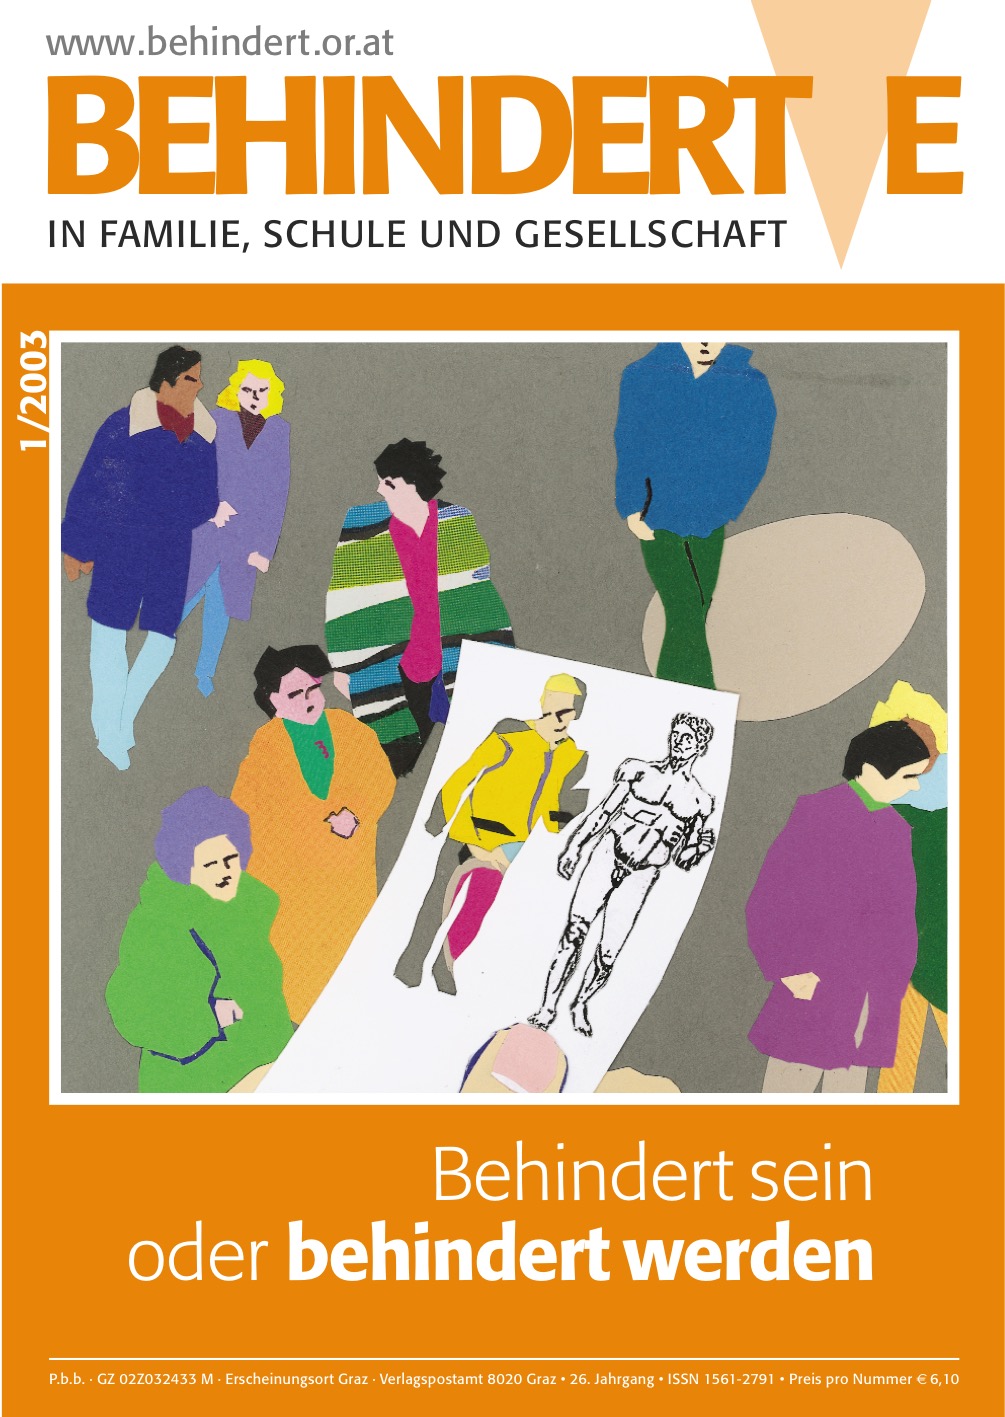 Titelbild der Zeitschrift BEHINDERTE MENSCHEN, Ausgabe 1/2003 "Behindert-sein oder behindert werden"